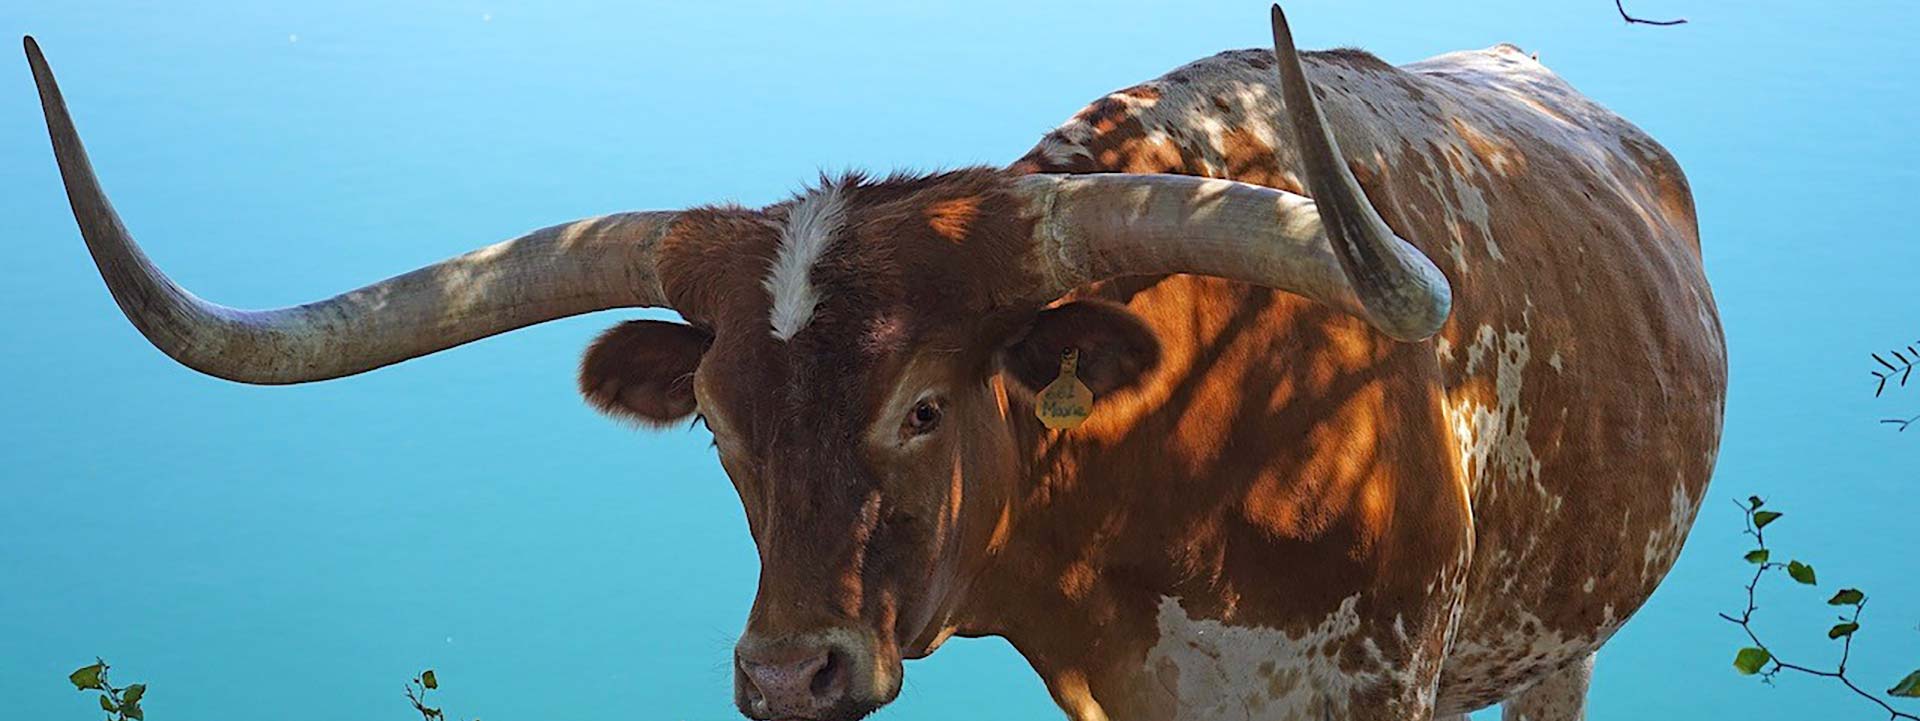 Longhorn Steers for sale in Texas